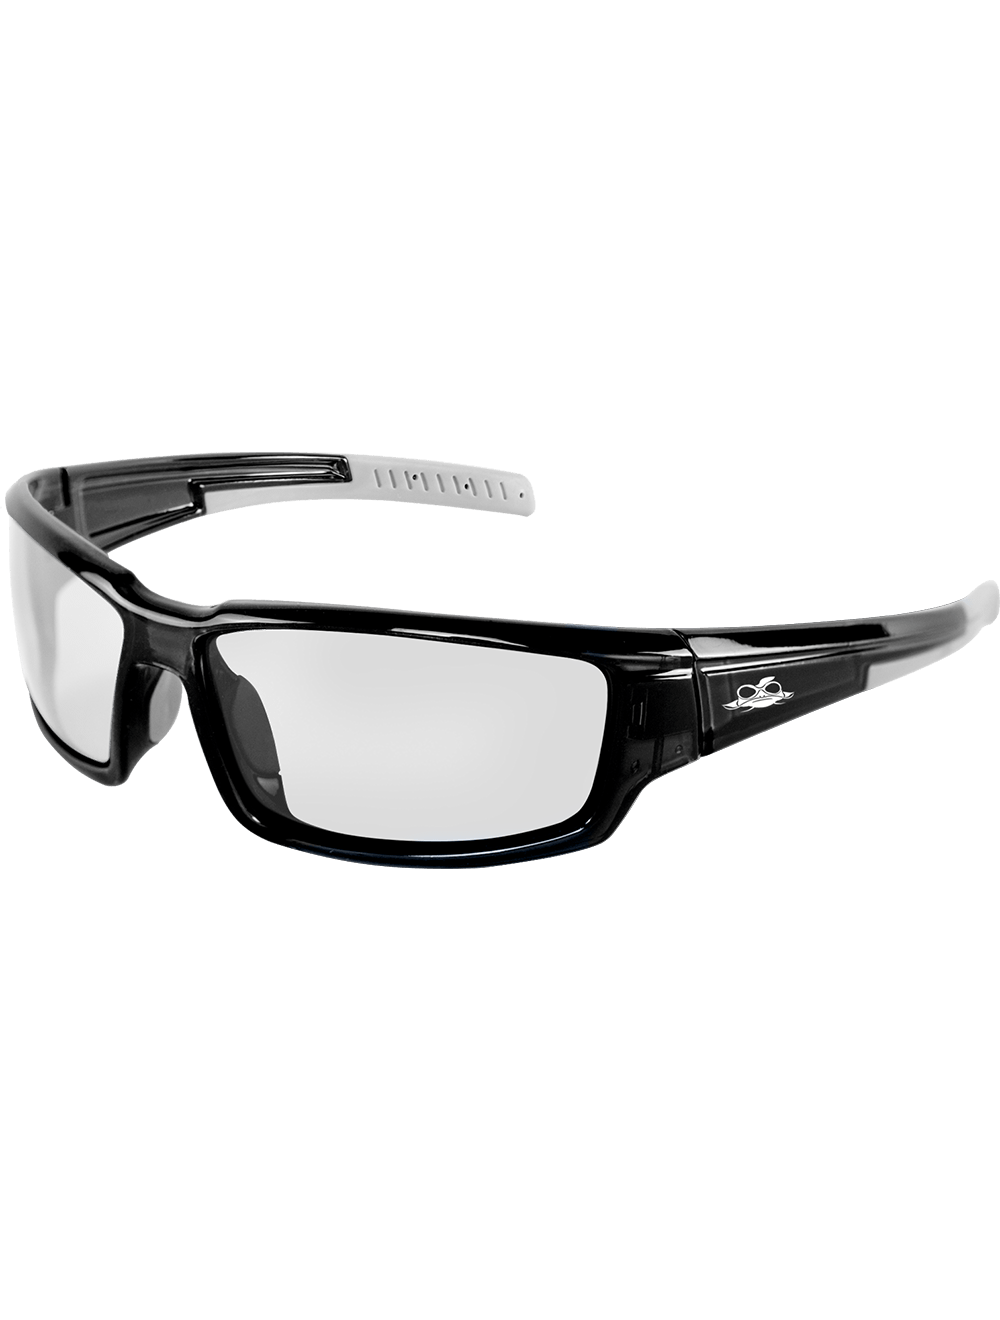 Maki® Clear Anti-Fog Lens, Crystal Black Frame Safety Glasses - BH1431AF